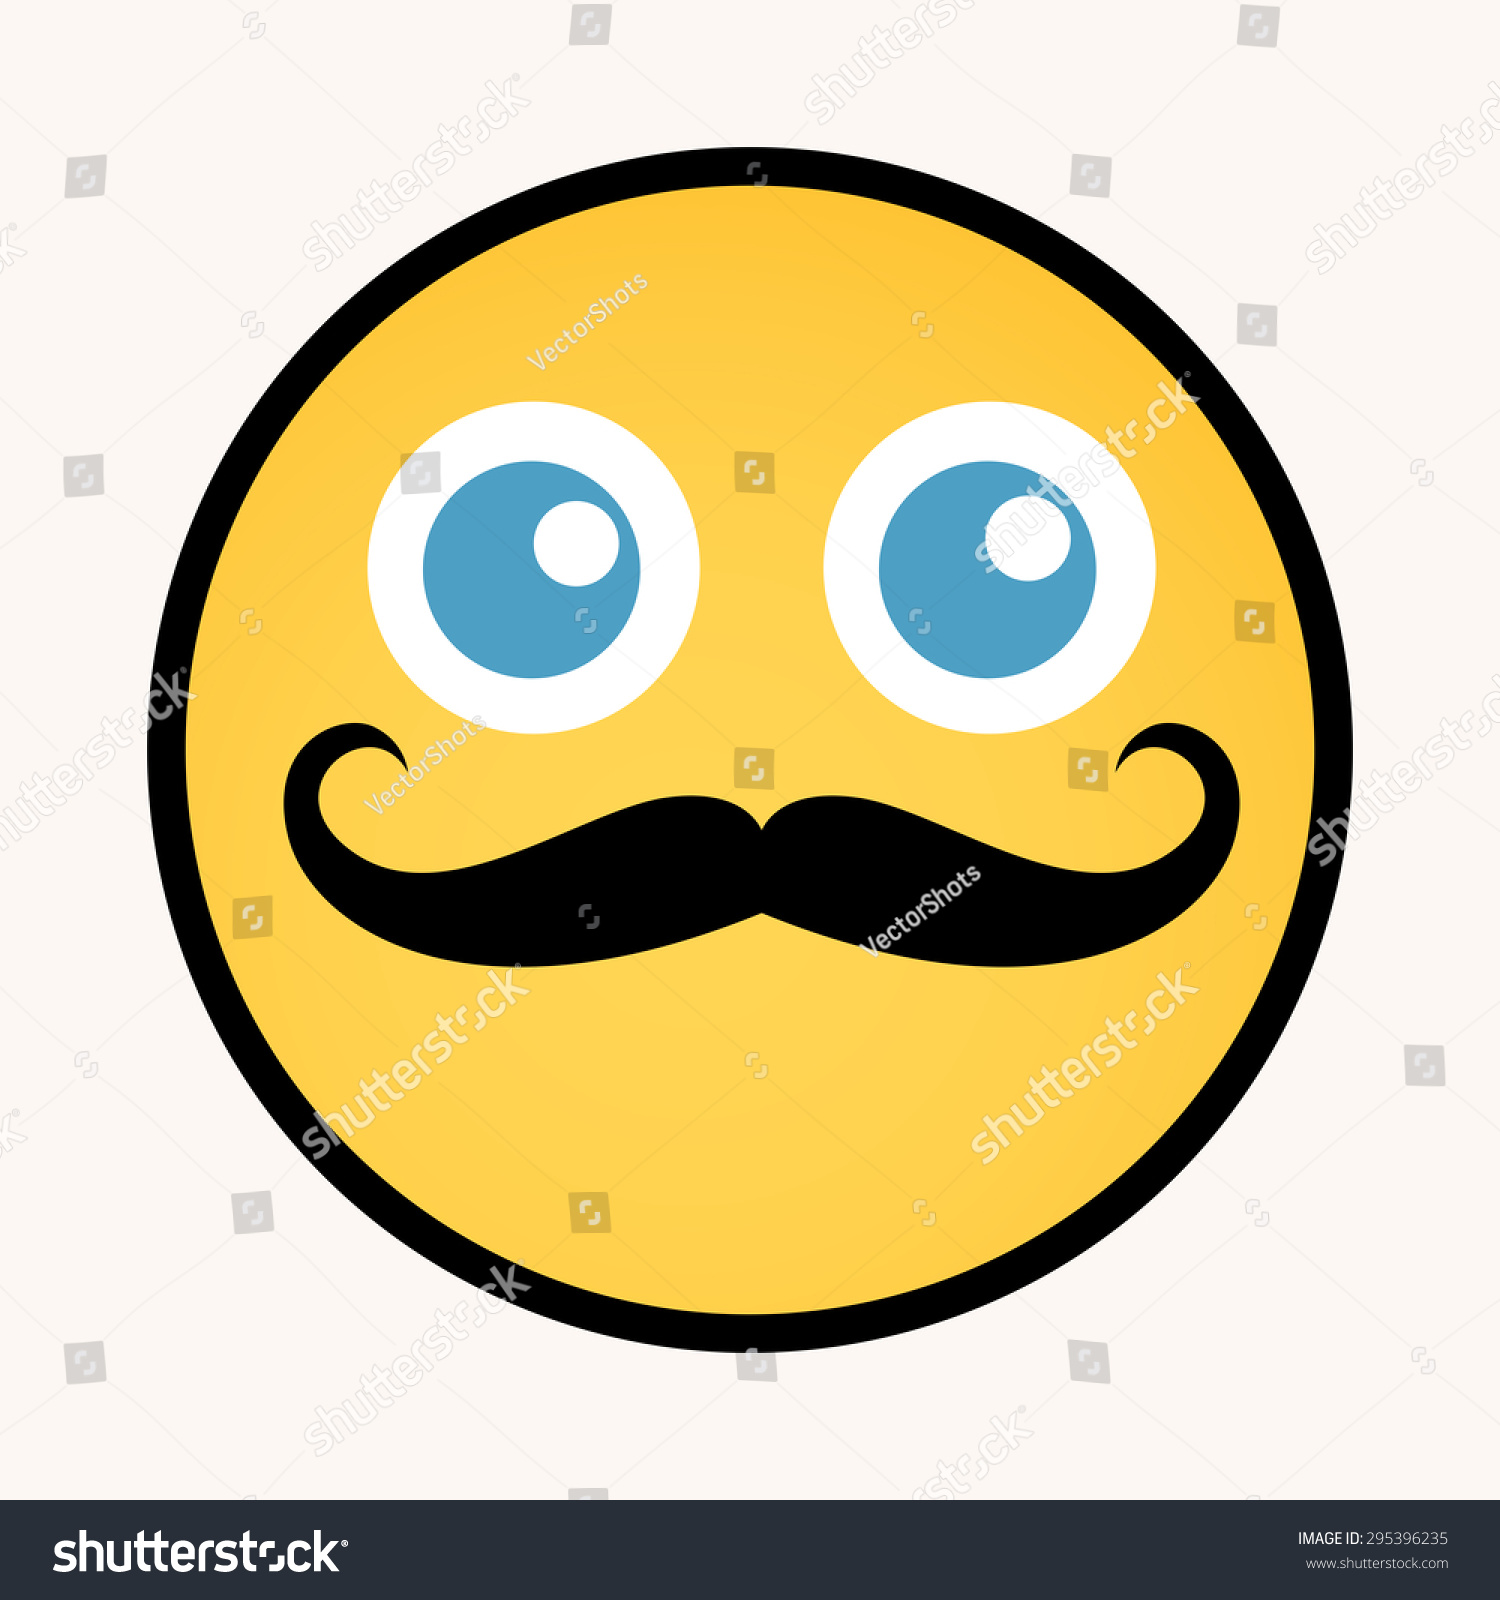 Moustache - Cartoon Smiley Vector Face - 295396235 : Shutterstock